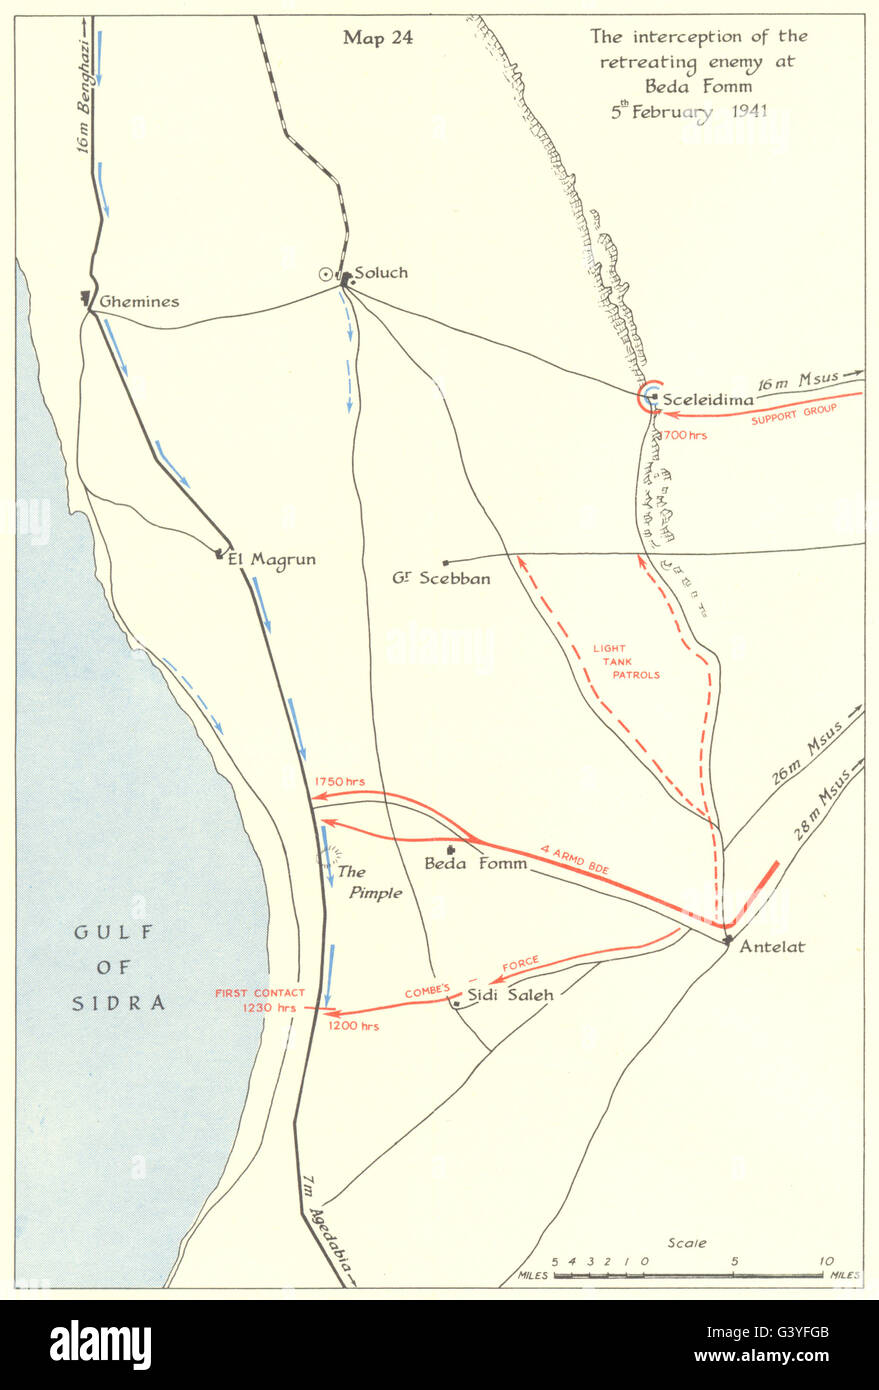 Libye : Graziani Cyrénaïque Jan-fév 1941 : ennemi interceptés à Beda Fomm, 1954 map Banque D'Images